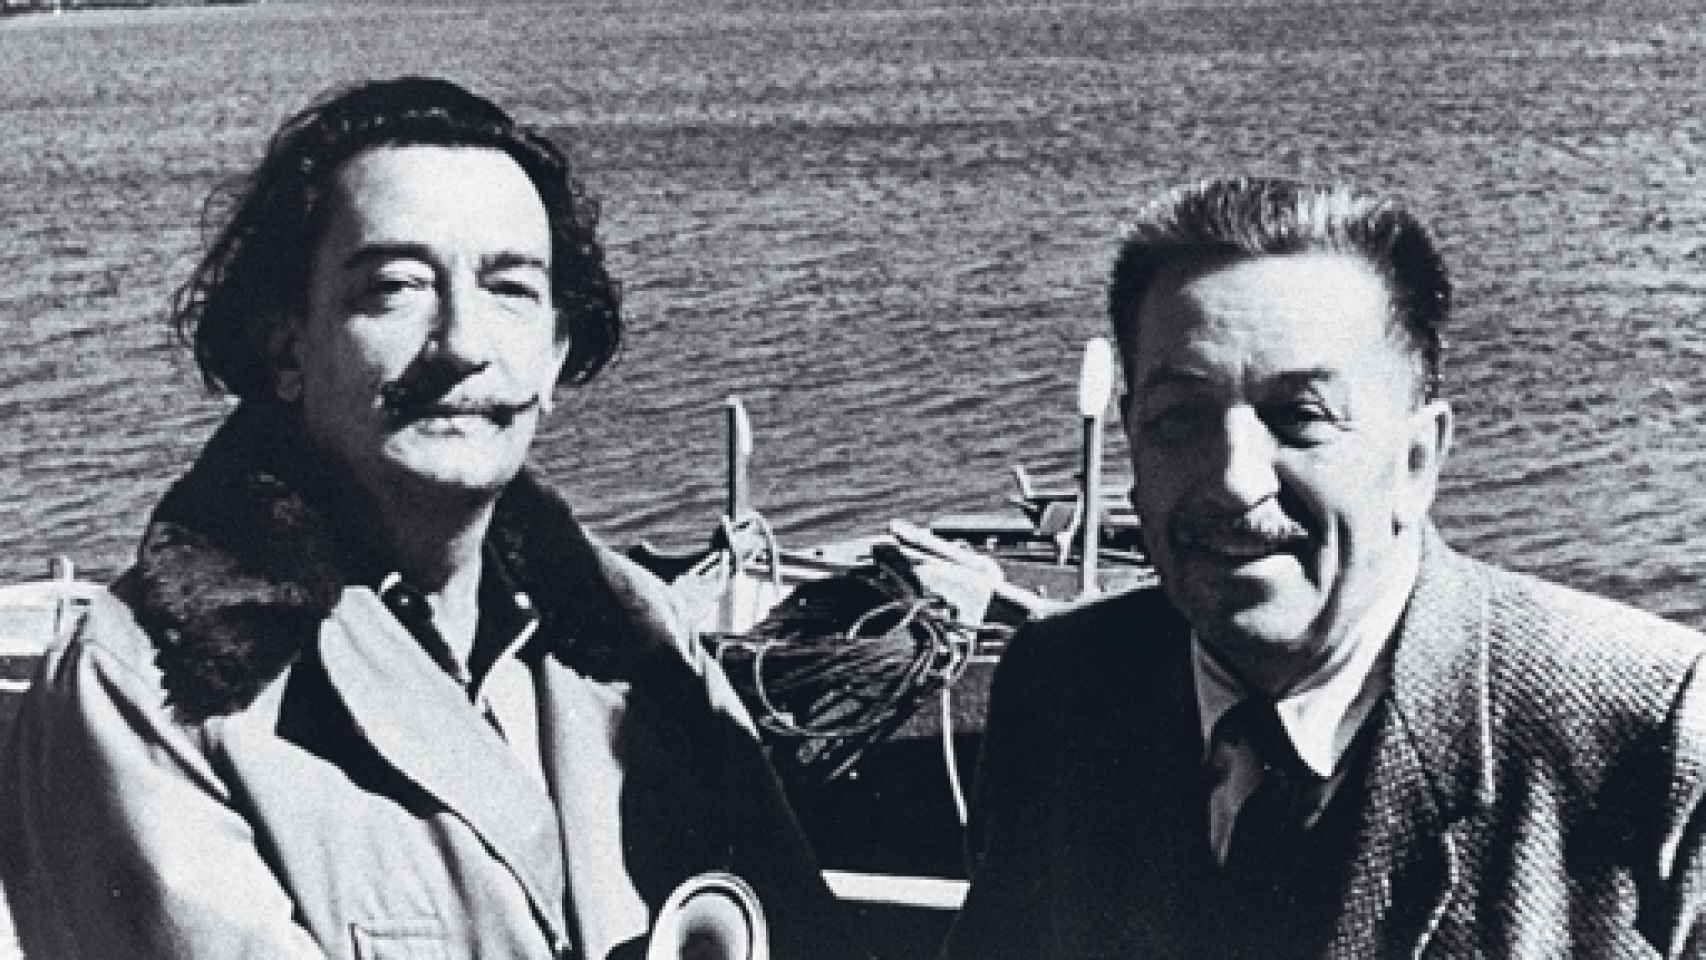 Image: El cine, la frustración de Dalí